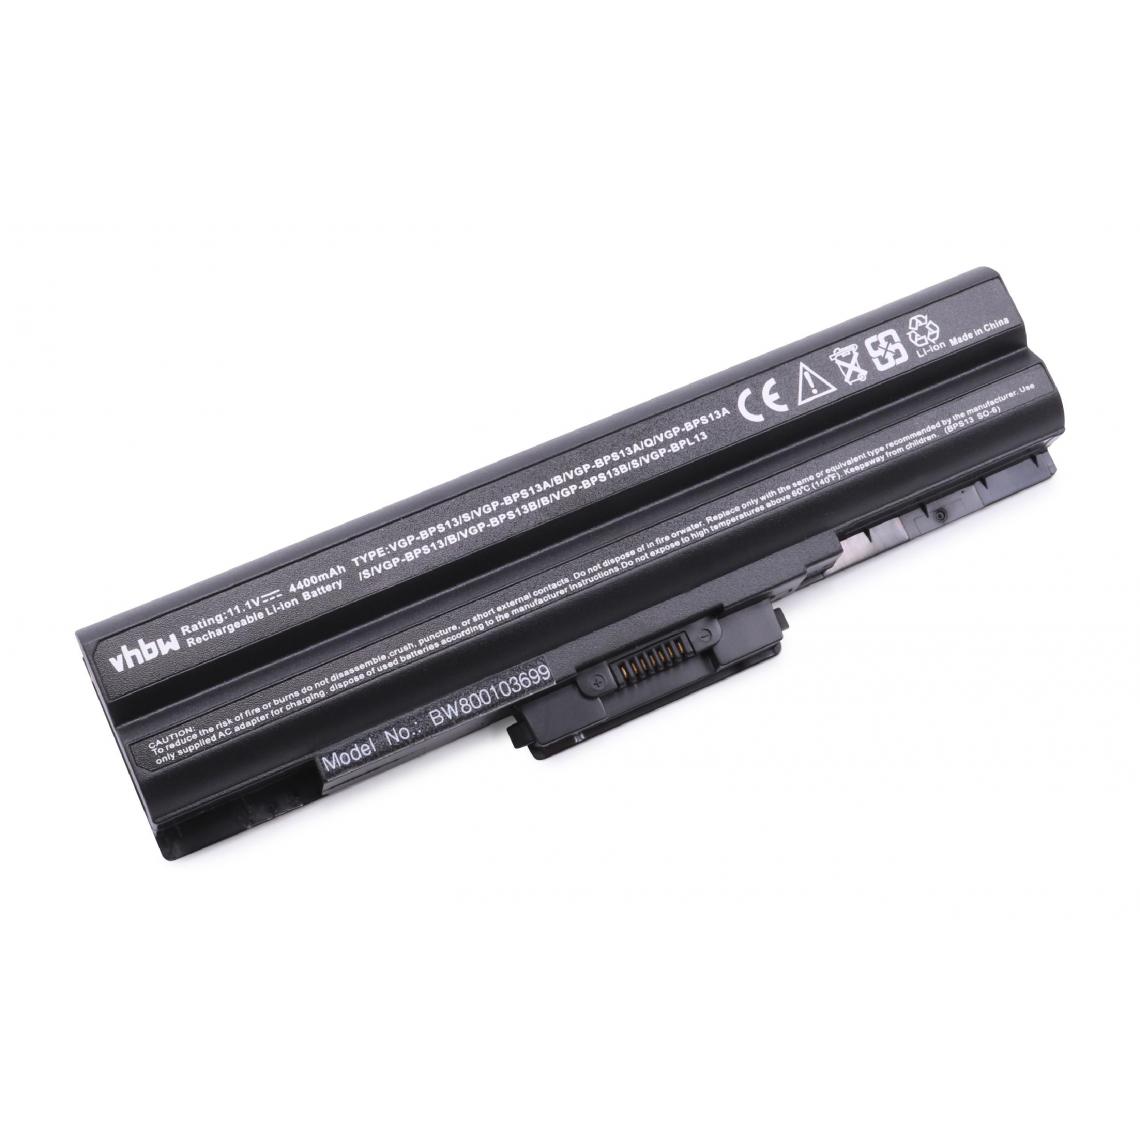 Vhbw - vhbw Batterie compatible avec Sony Vaio VGN-TX17C/L, VGN-TX25C/W, VGN-TX26C/B, VGN-TX26C/T ordinateur portable (4400mAh, 11,1V, noir) - Batterie PC Portable